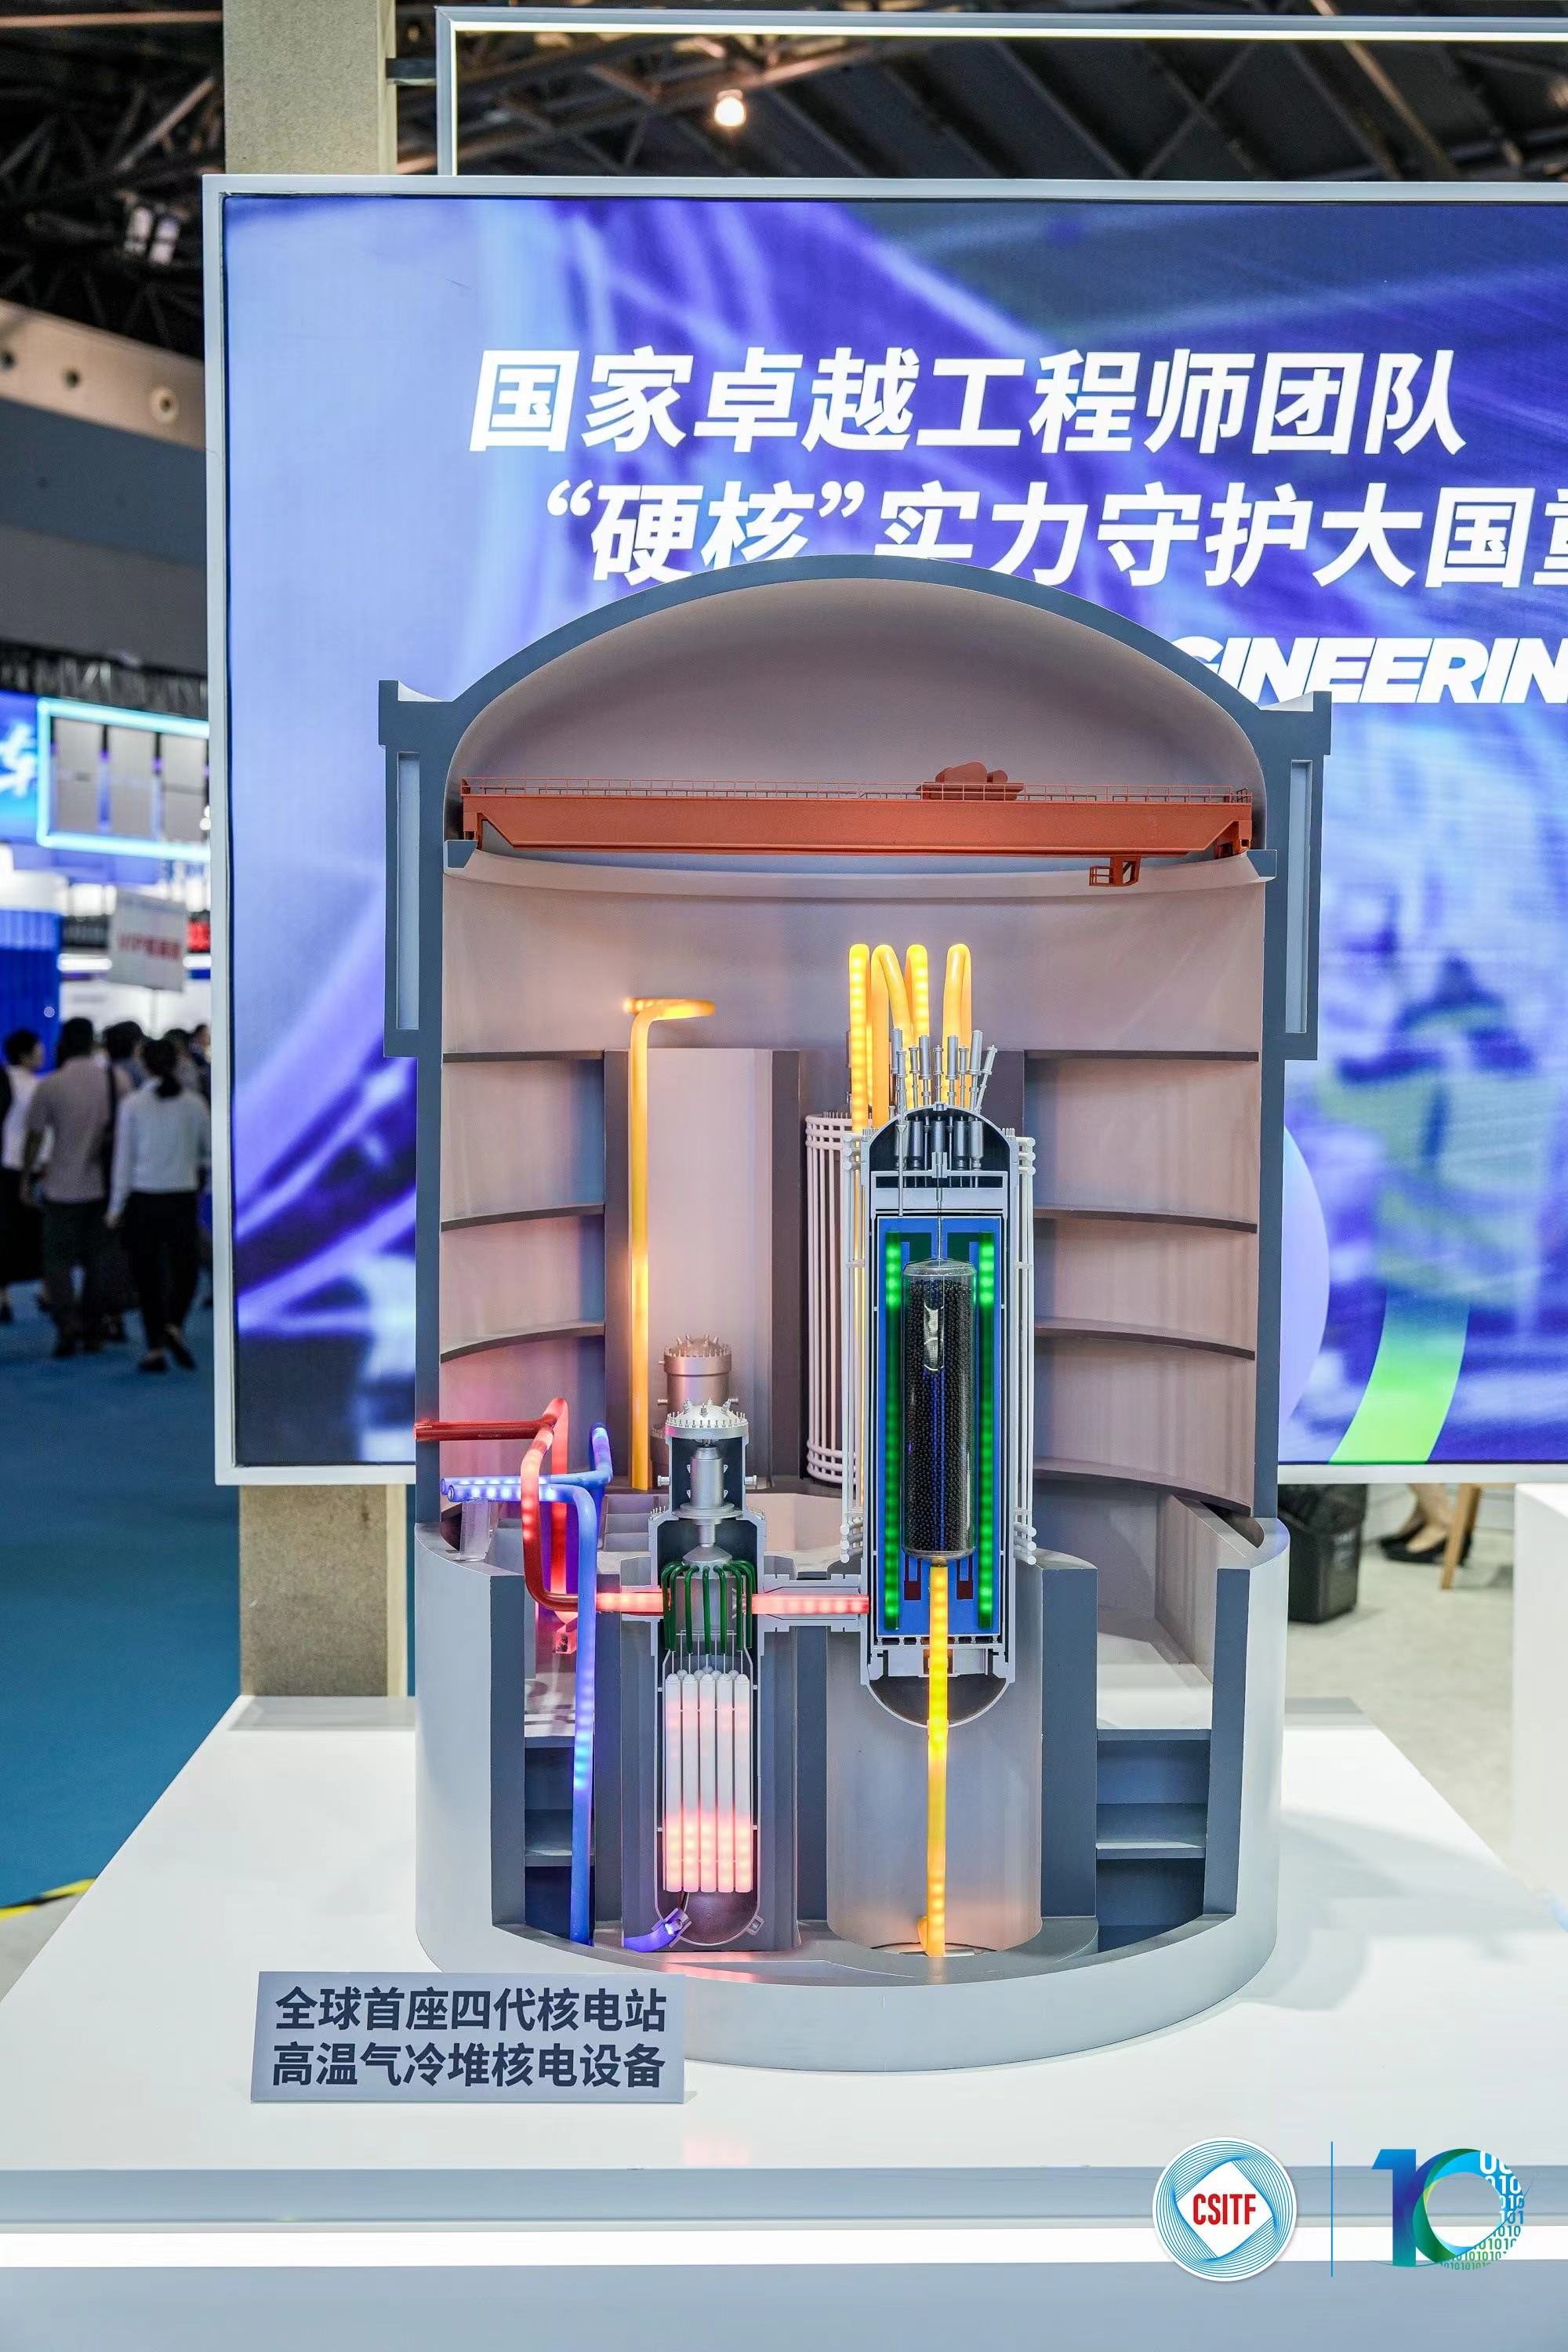 图片说明：上海电气展台展出的全球首座四代核电站高温气冷堆核电设备。